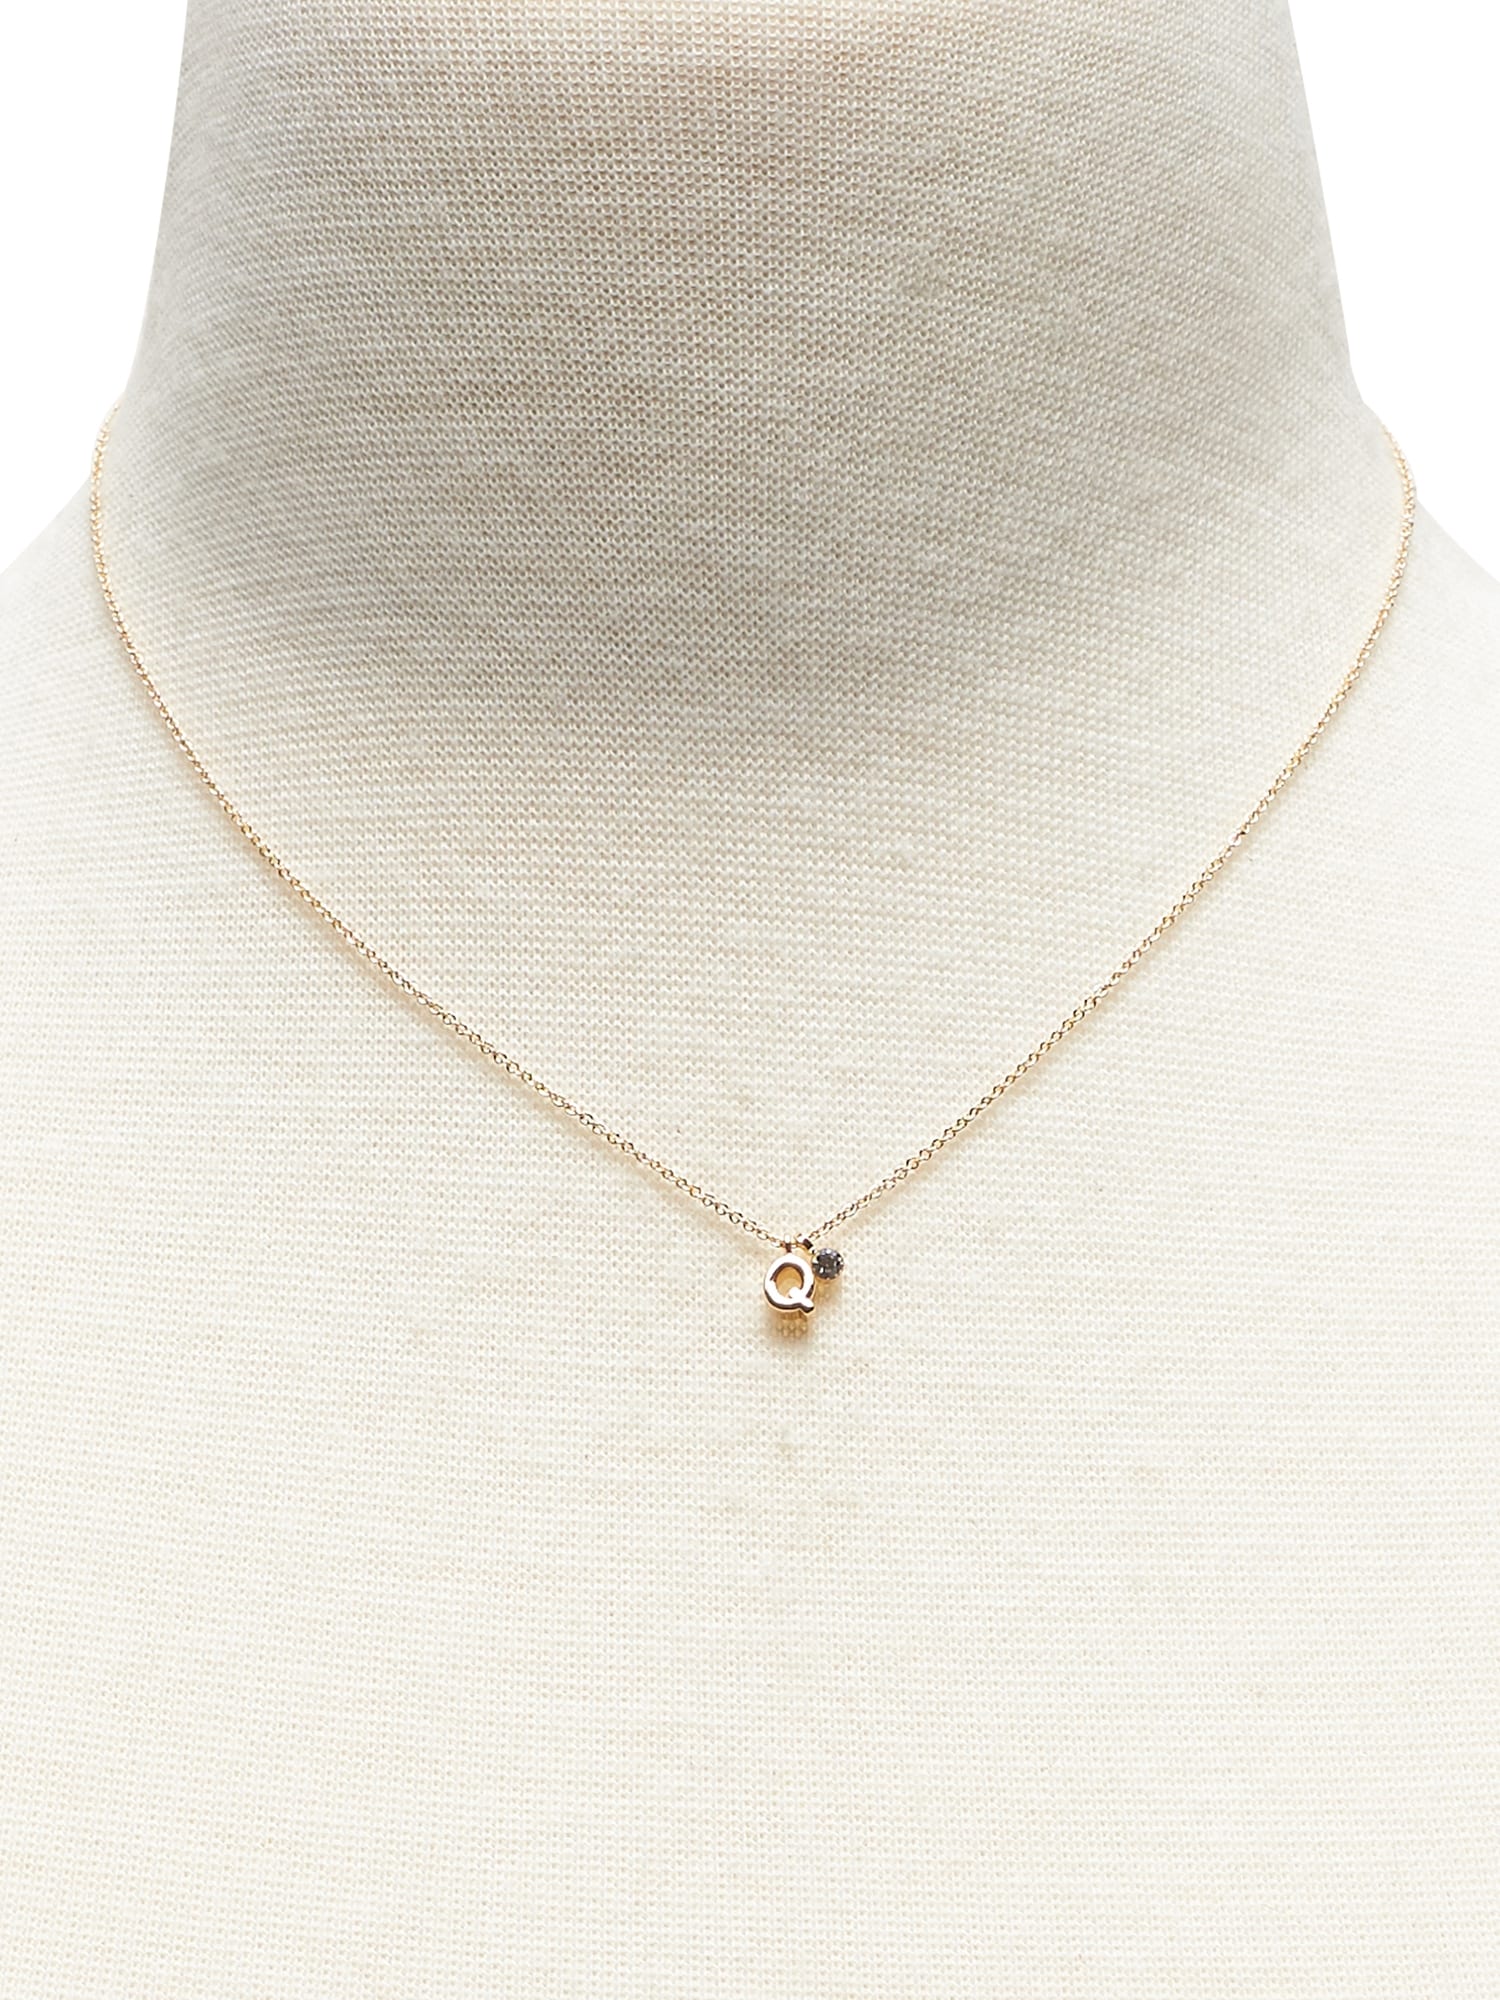 Mini Q Pendant Necklace